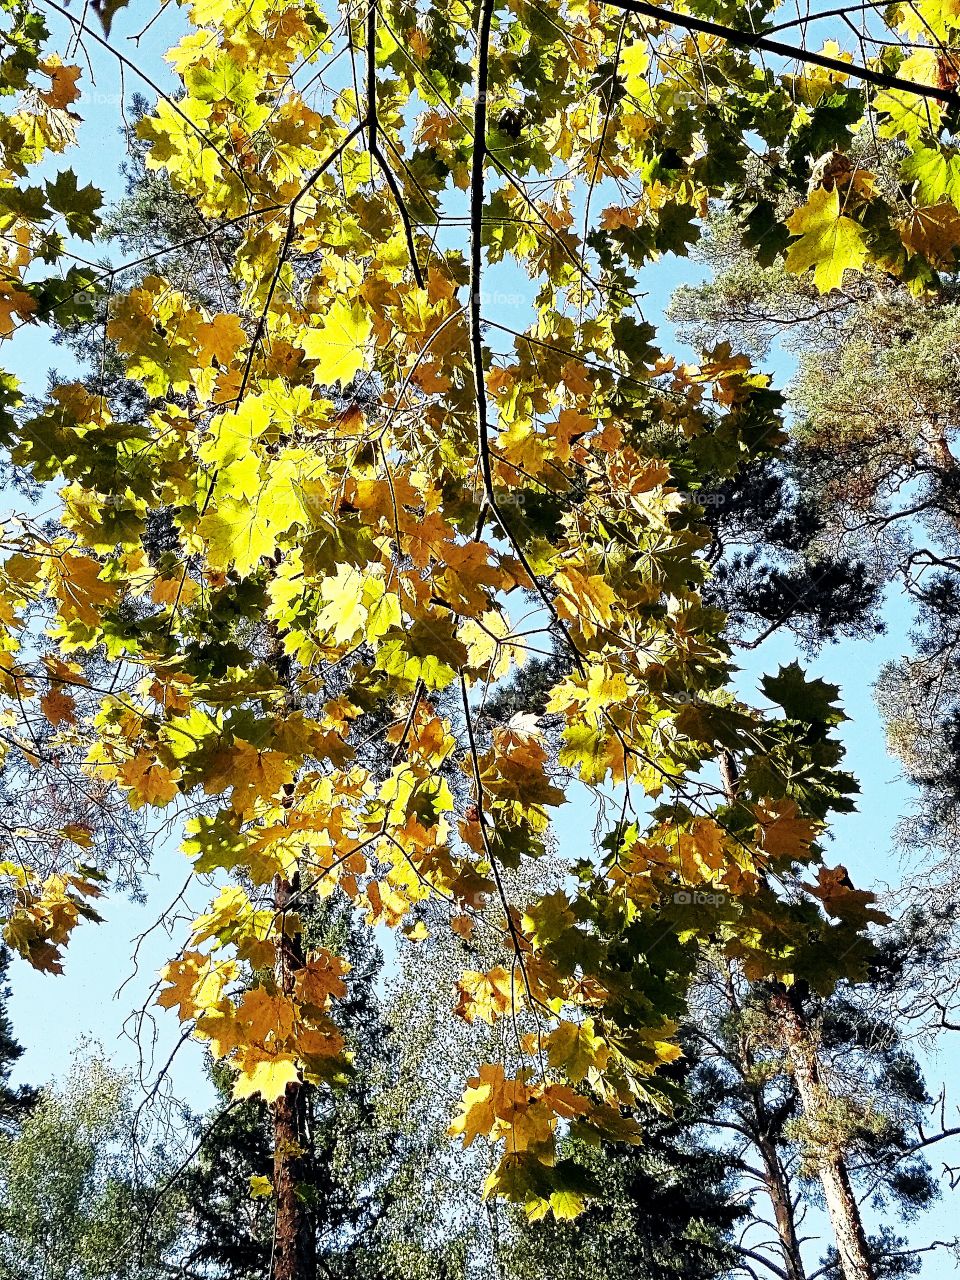 Осенний, солнечный, тёплый день в лесу. Голубое небо, жёлтые листья клёна в свете солнца.